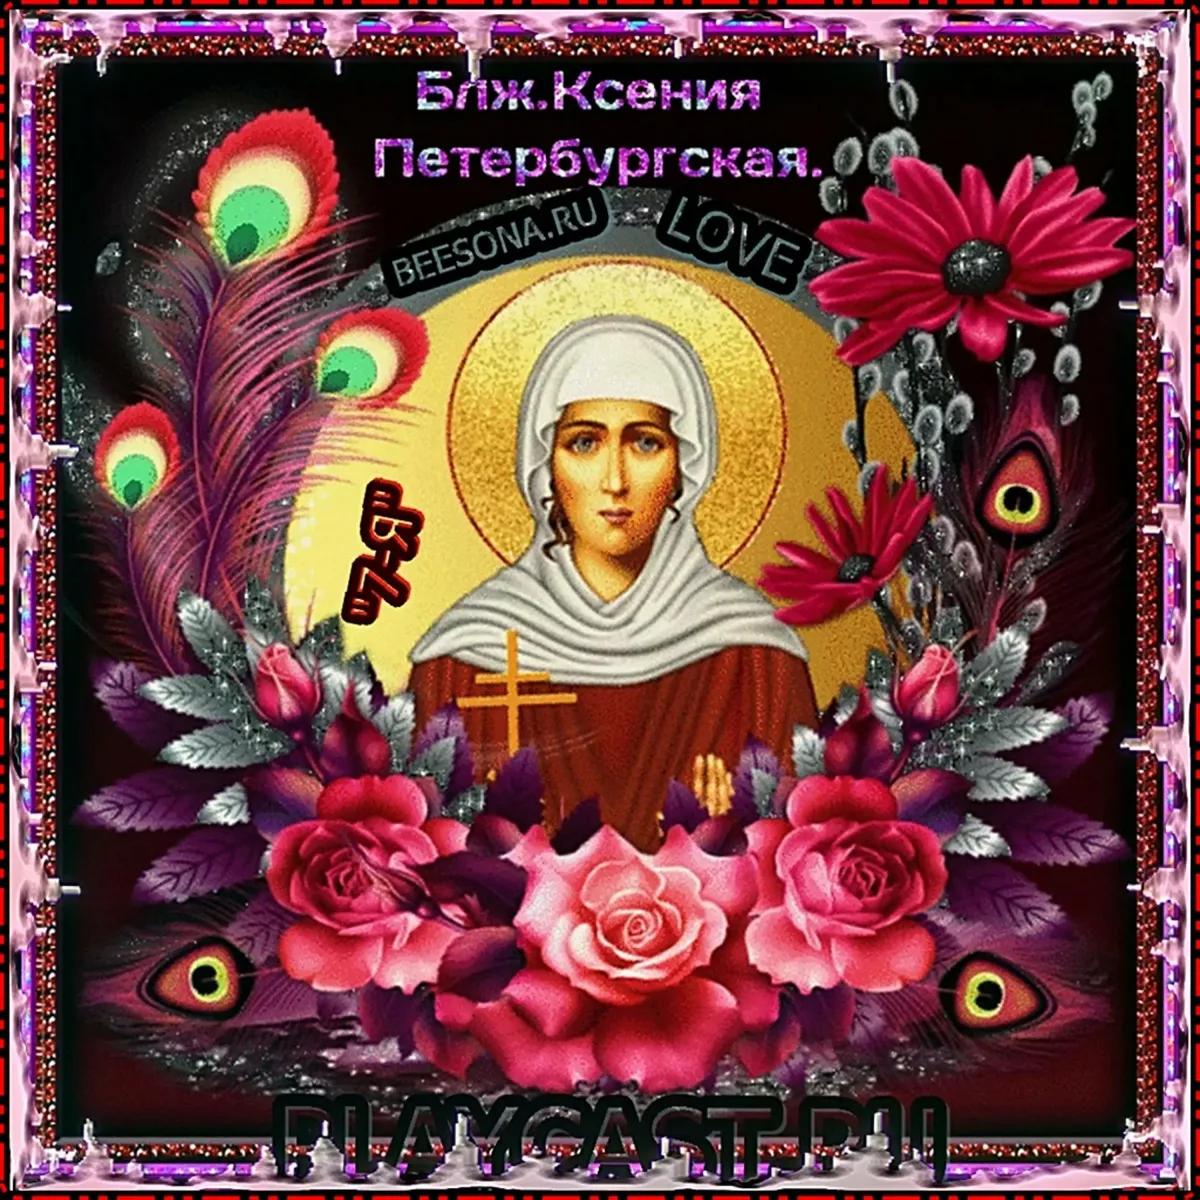 Поздравление с днем ксении открытка. 6 Февраля память преподобной Ксении Петербургской.